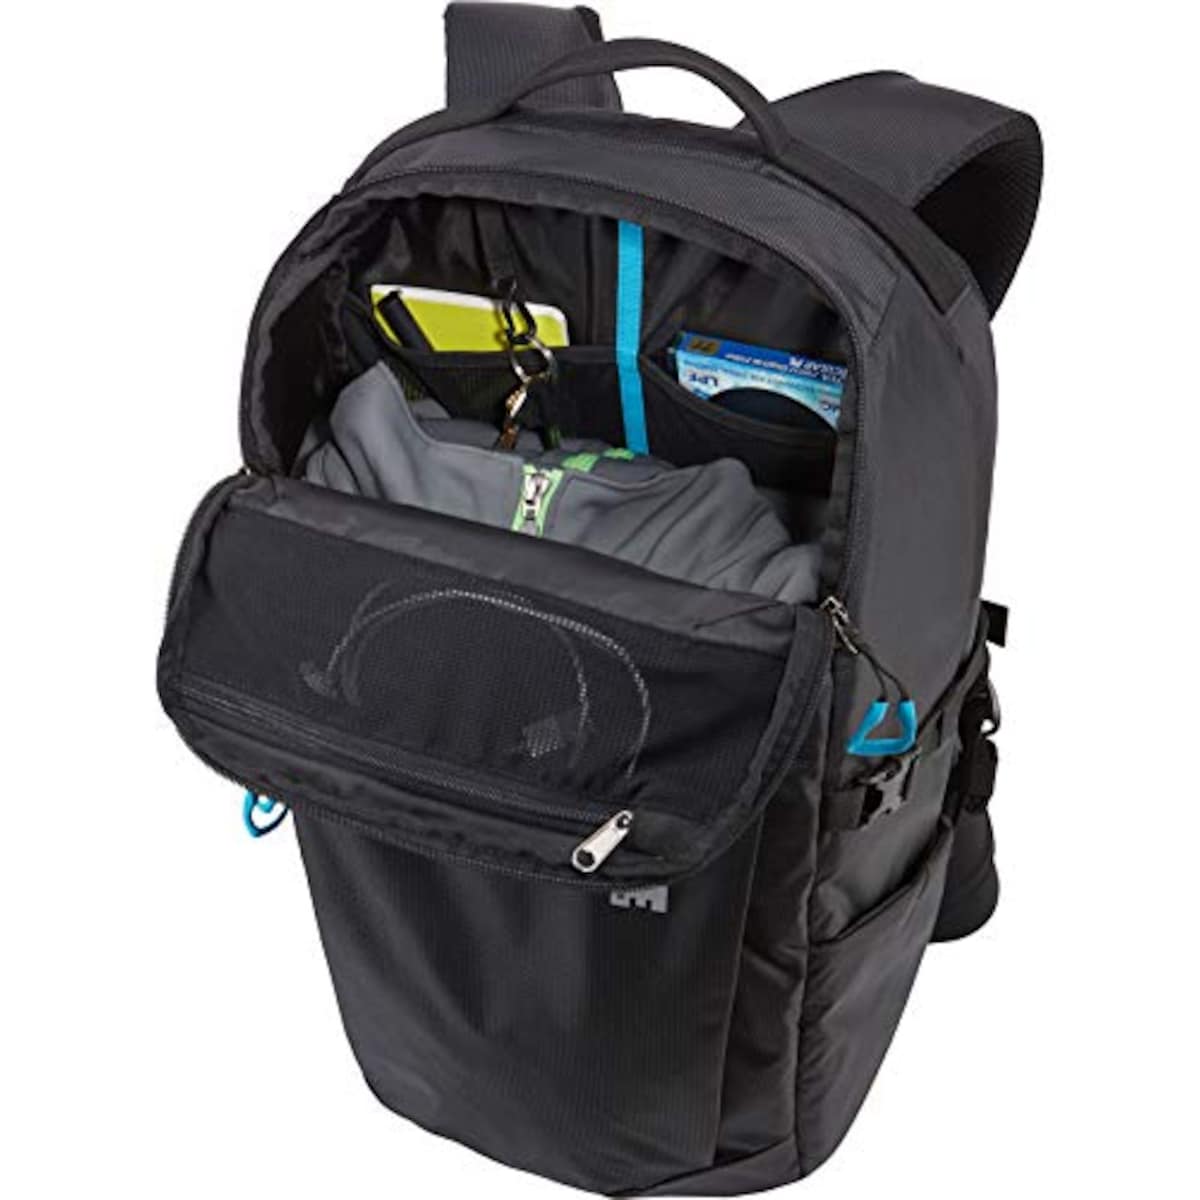  [スーリー]リュック Thule Aspect DSLR Backpack デジタル一眼レフカメラ収納用 TAC106 Black画像4 